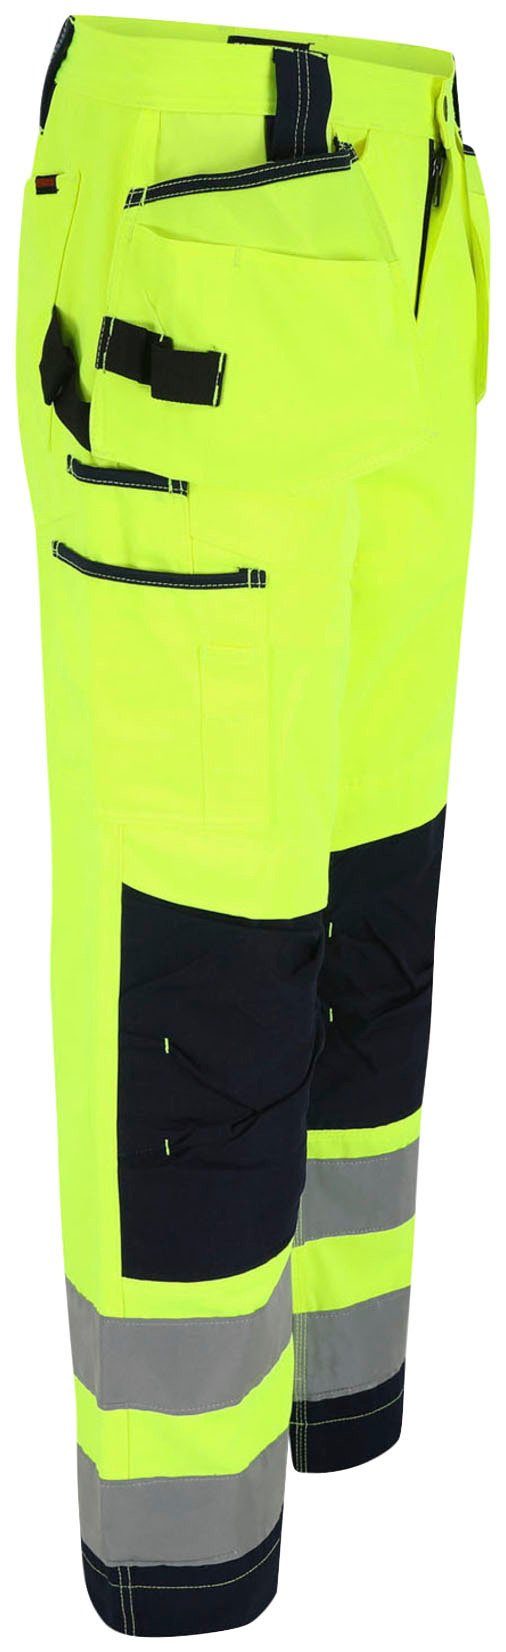 Arbeitshose Hose 2 viele Nageltaschen, sehr gelb Herock feste Wasserabweisend, Taschen, Styx Warnschutz angenehm